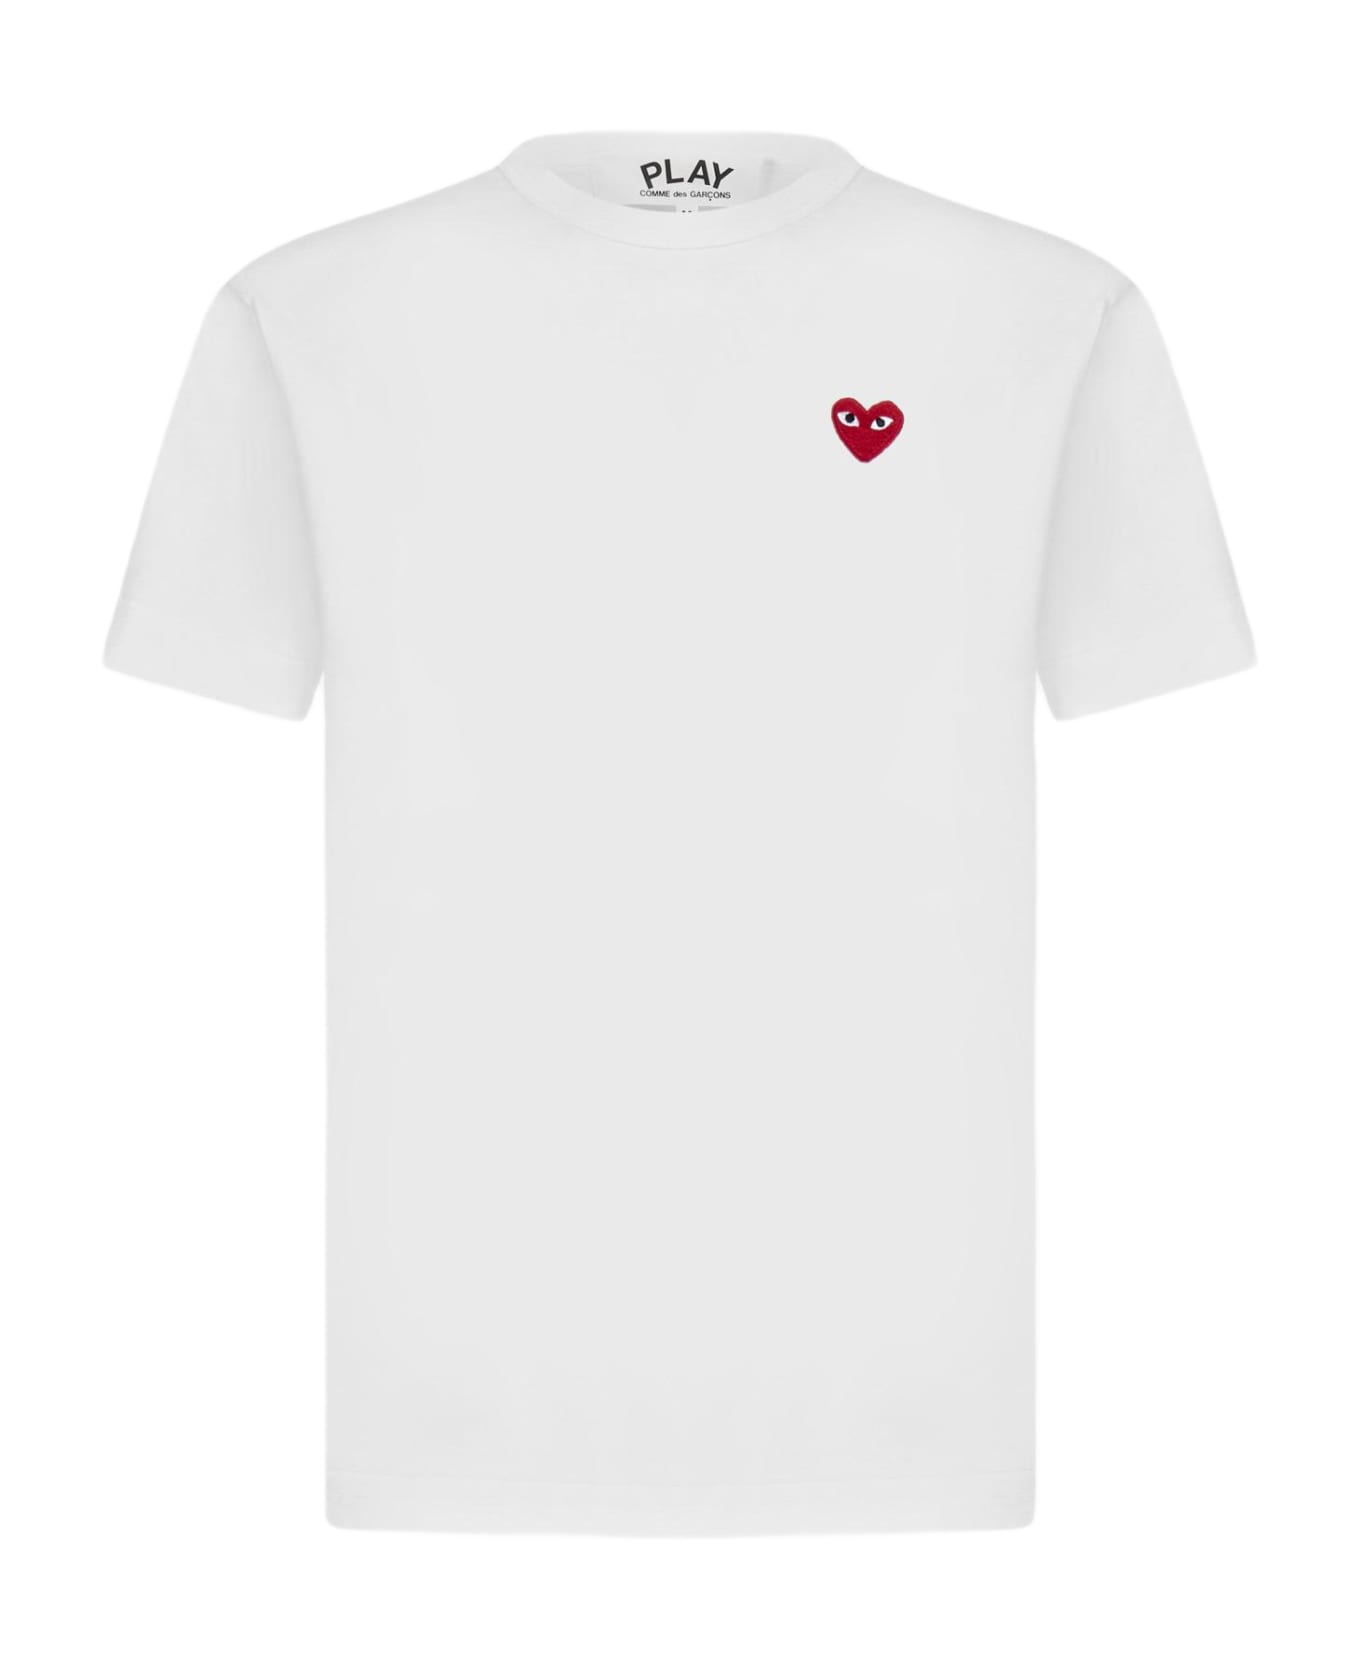 Comme des Garçons Heart Patch Cotton T-shirt - White